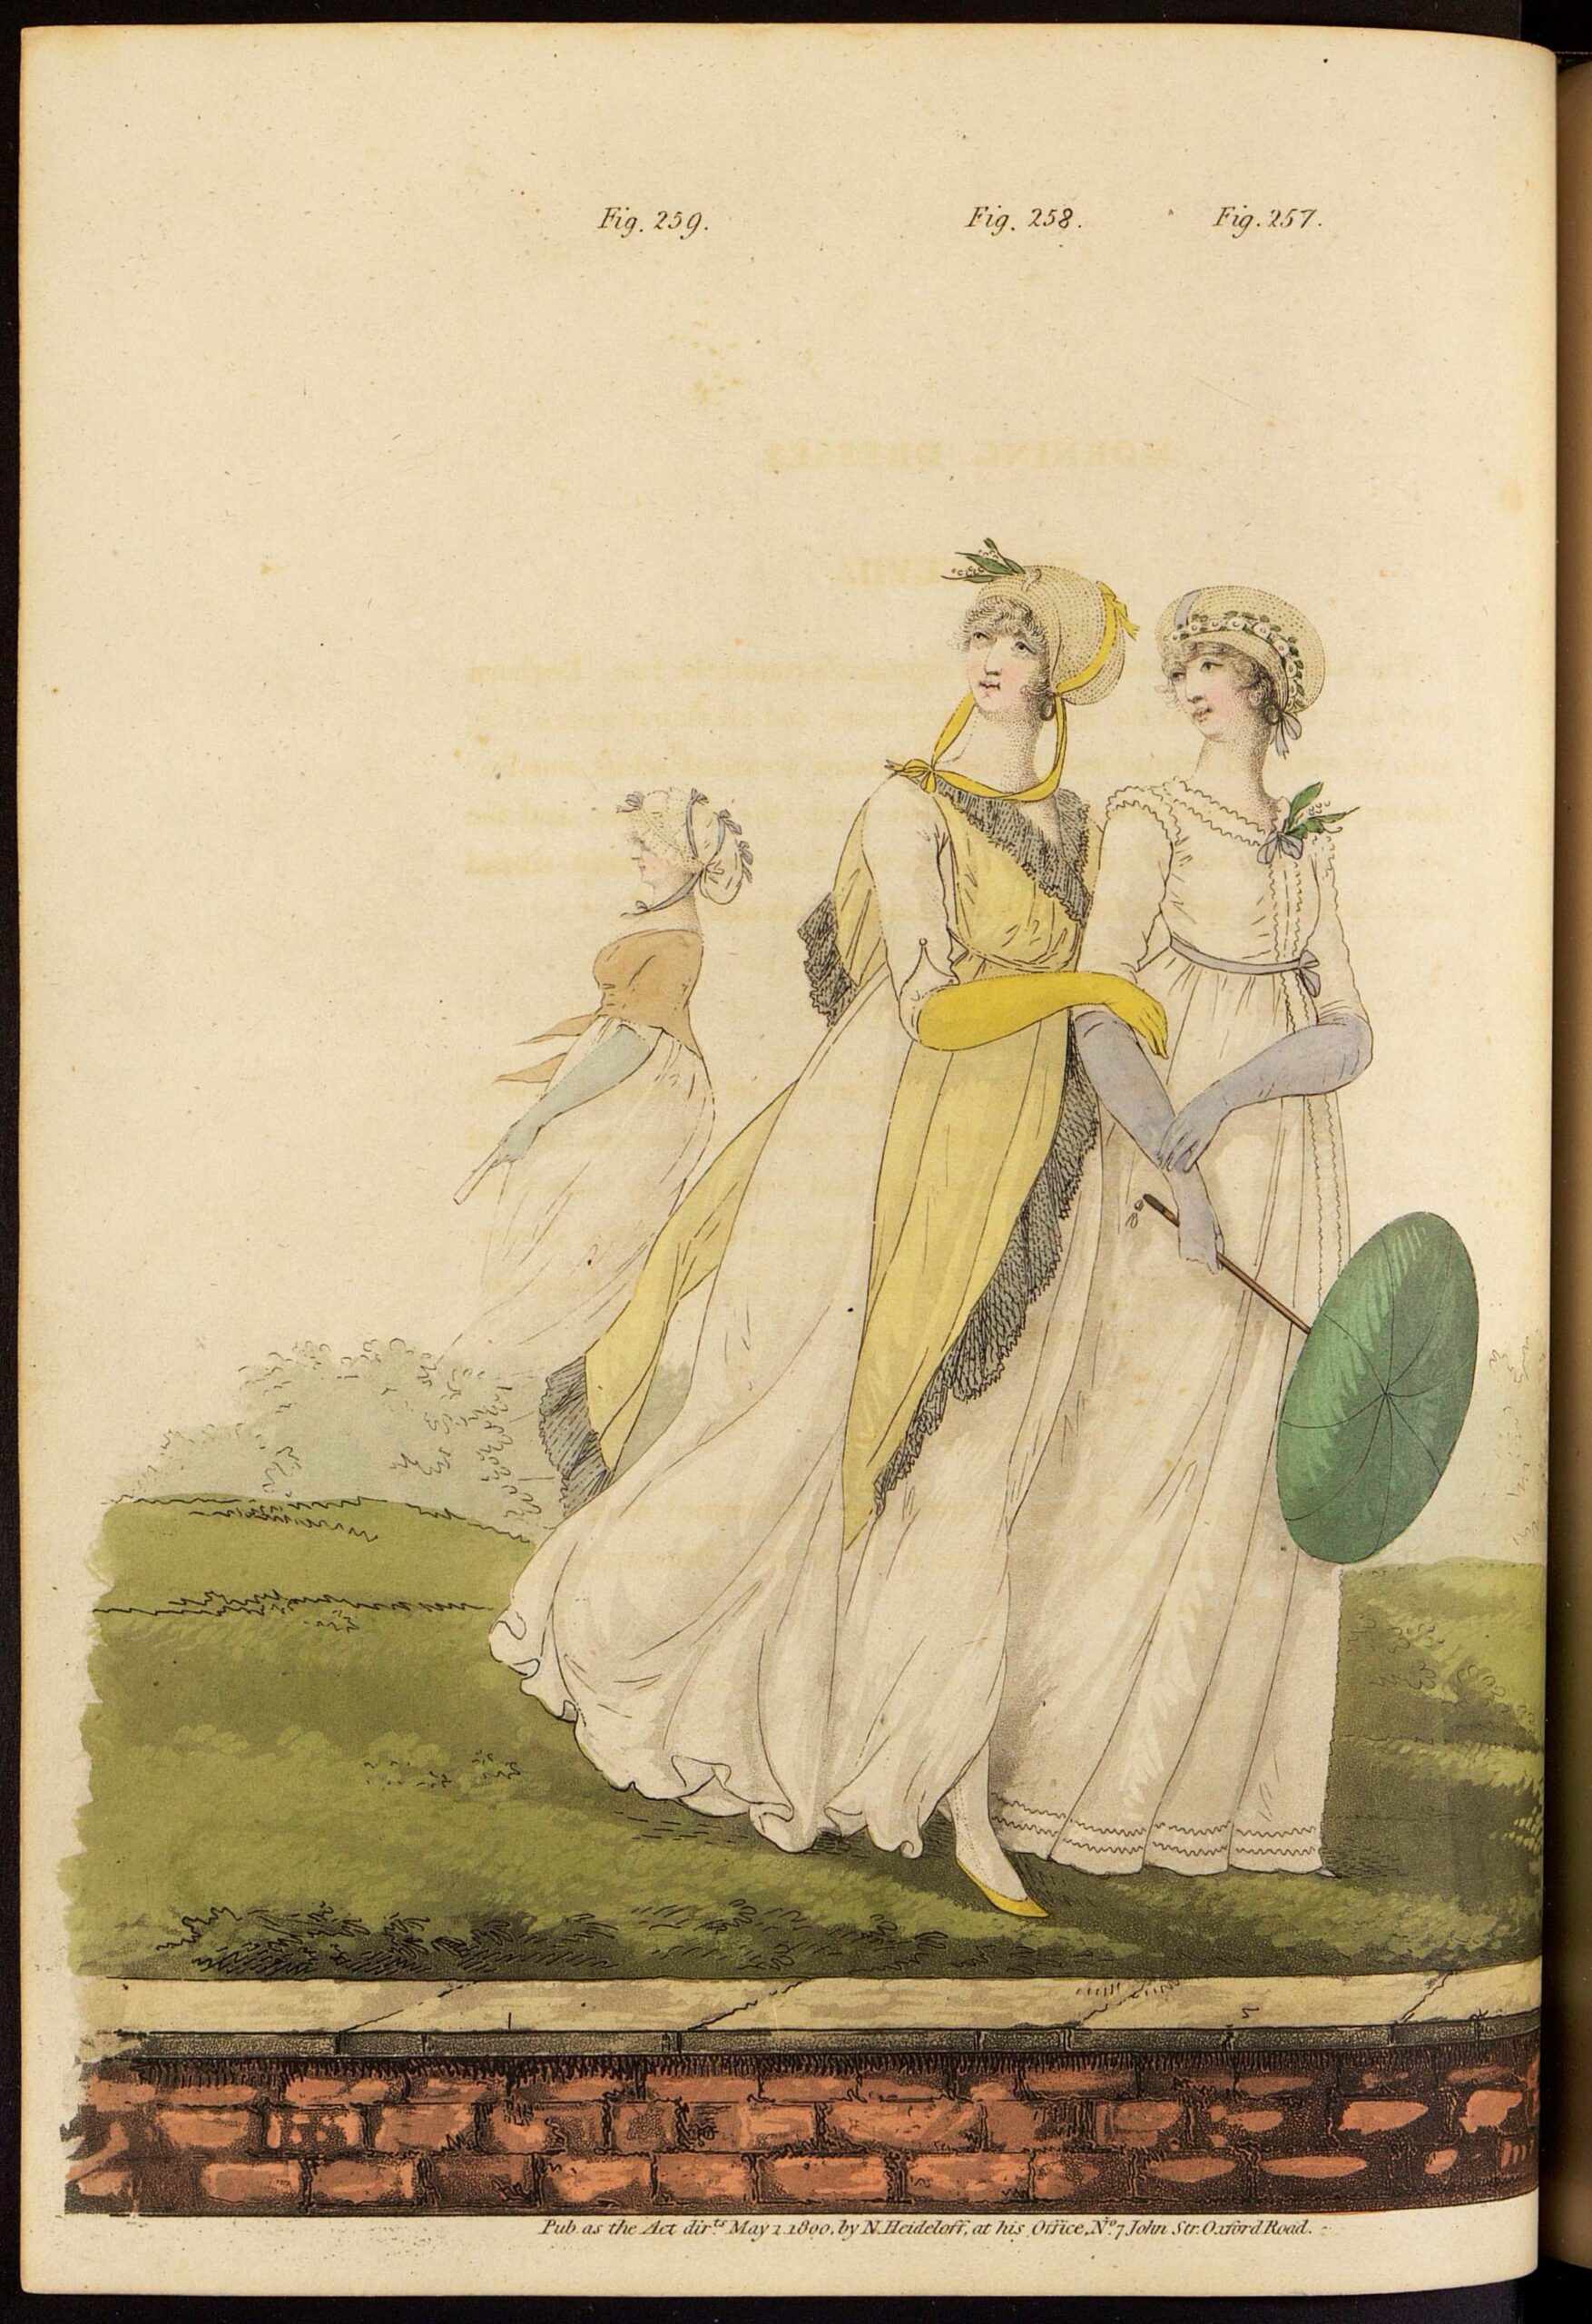 Утренние платья. Лист из журнала «Gallery of fashion»Великобритания, 1800 г.